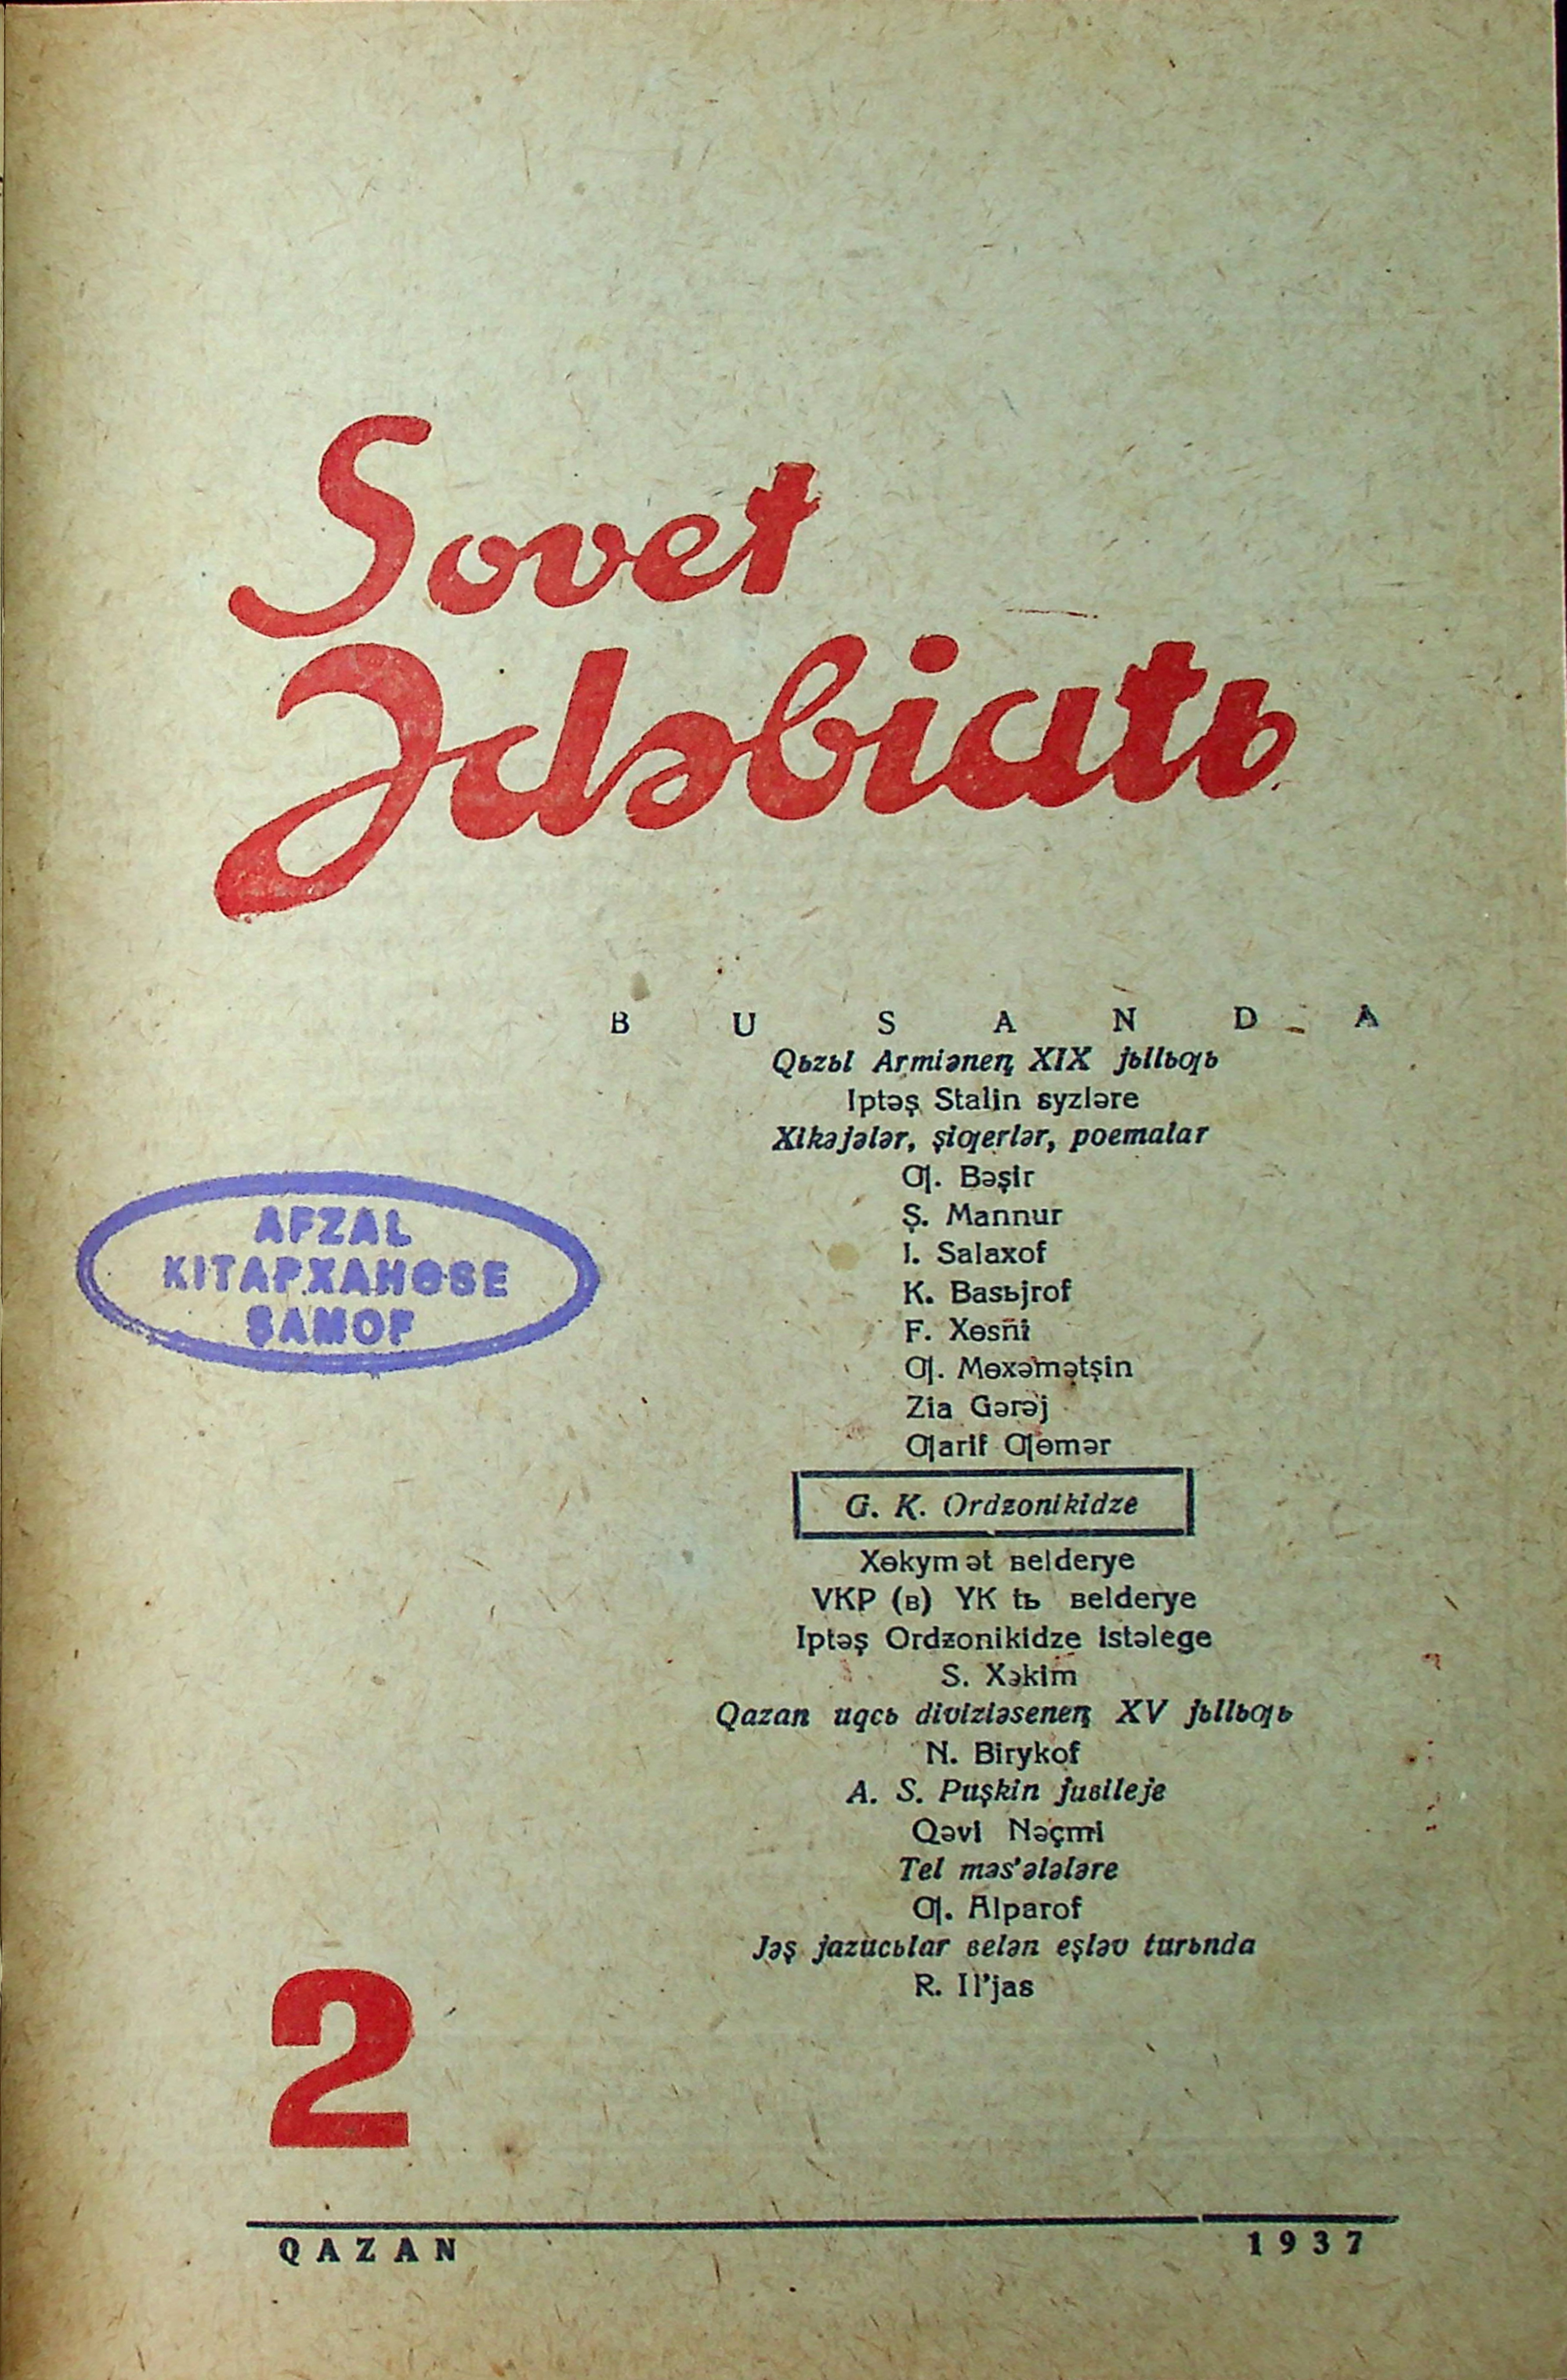 Фото журнала 1937 года. Выпуск номер 2